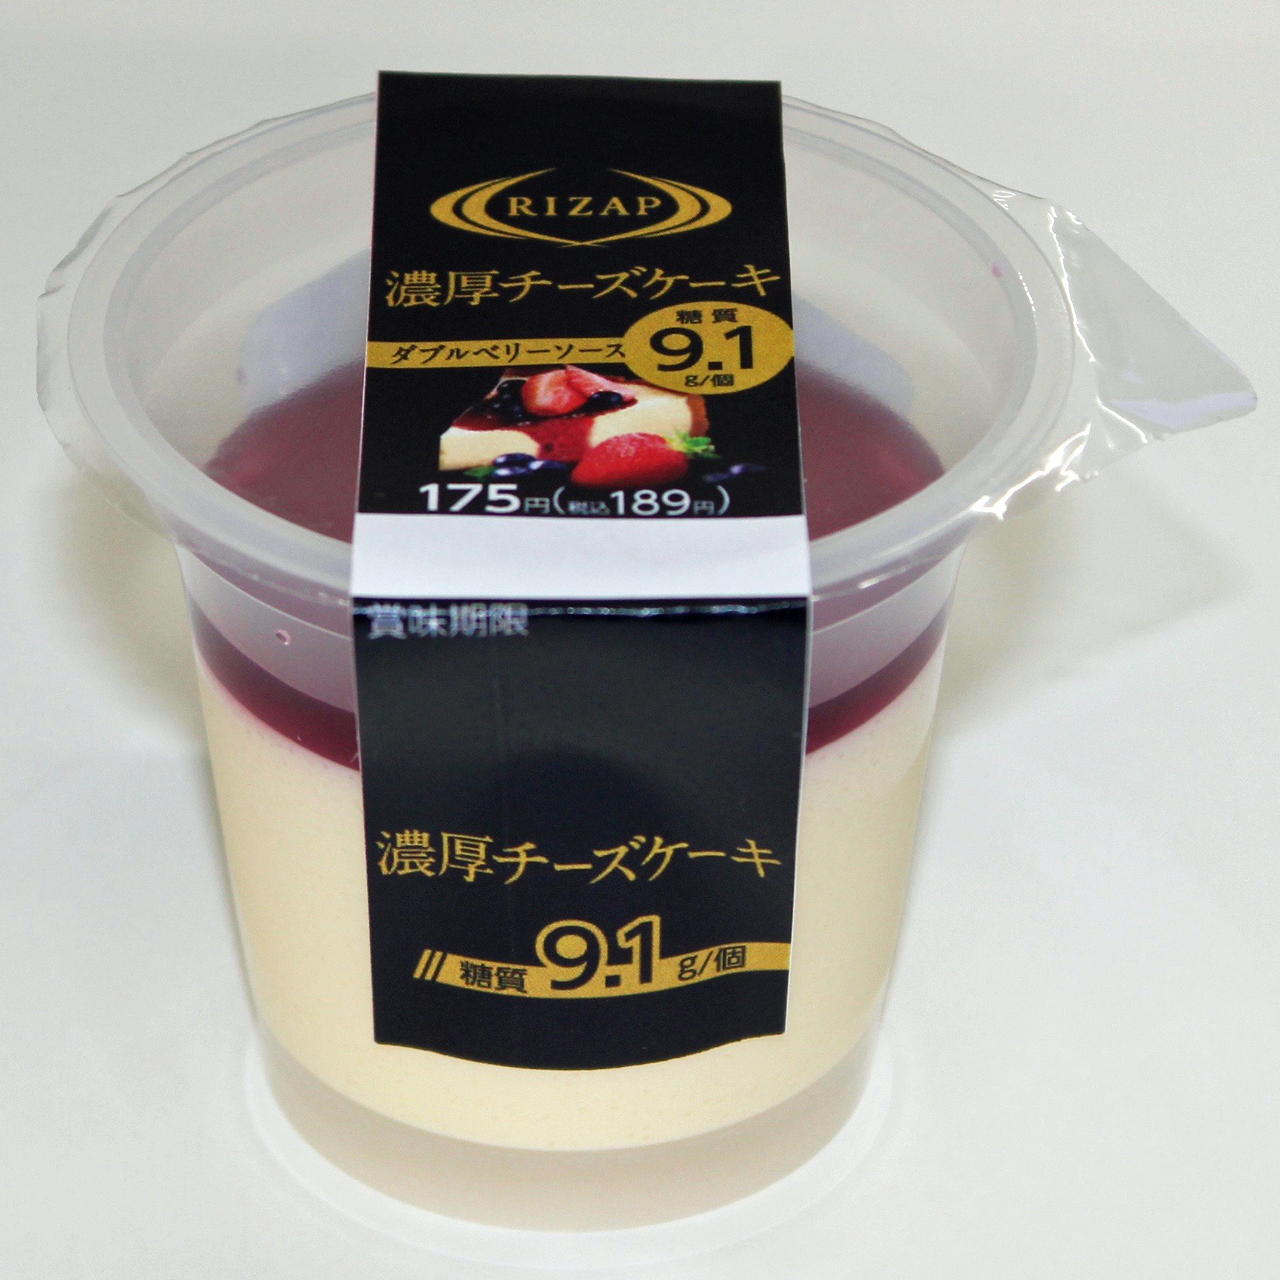 「濃厚チーズケーキ　ダブルベリーソース」175円（税別）